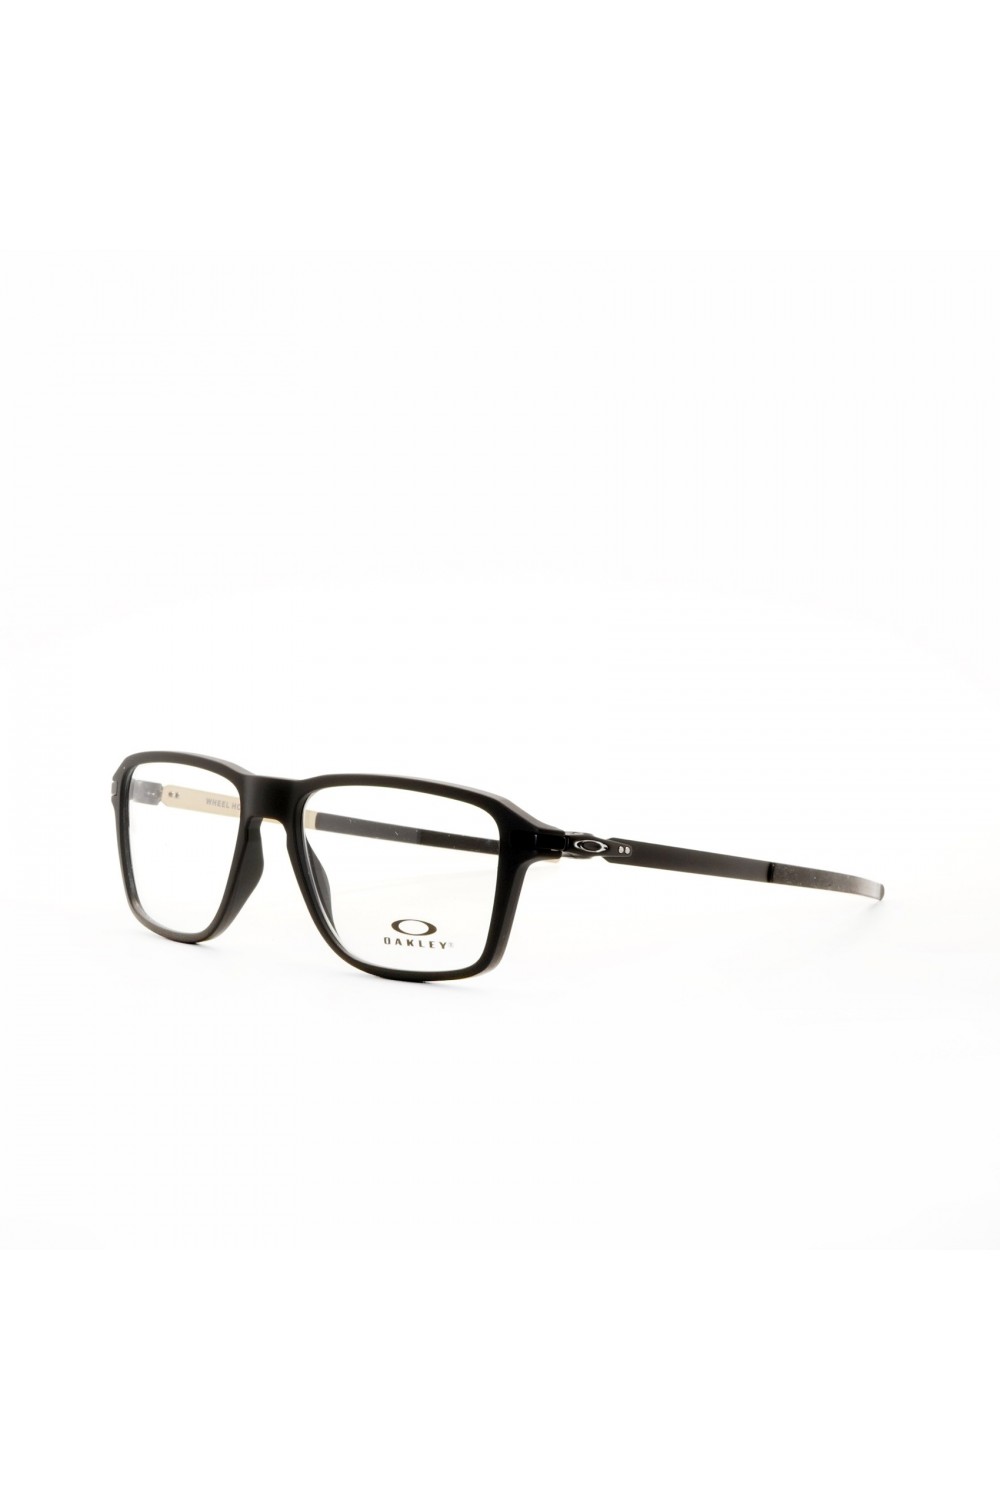 Oakley - Occhiali da vista rettangolari sportivi per uomo nero satinato - 8166